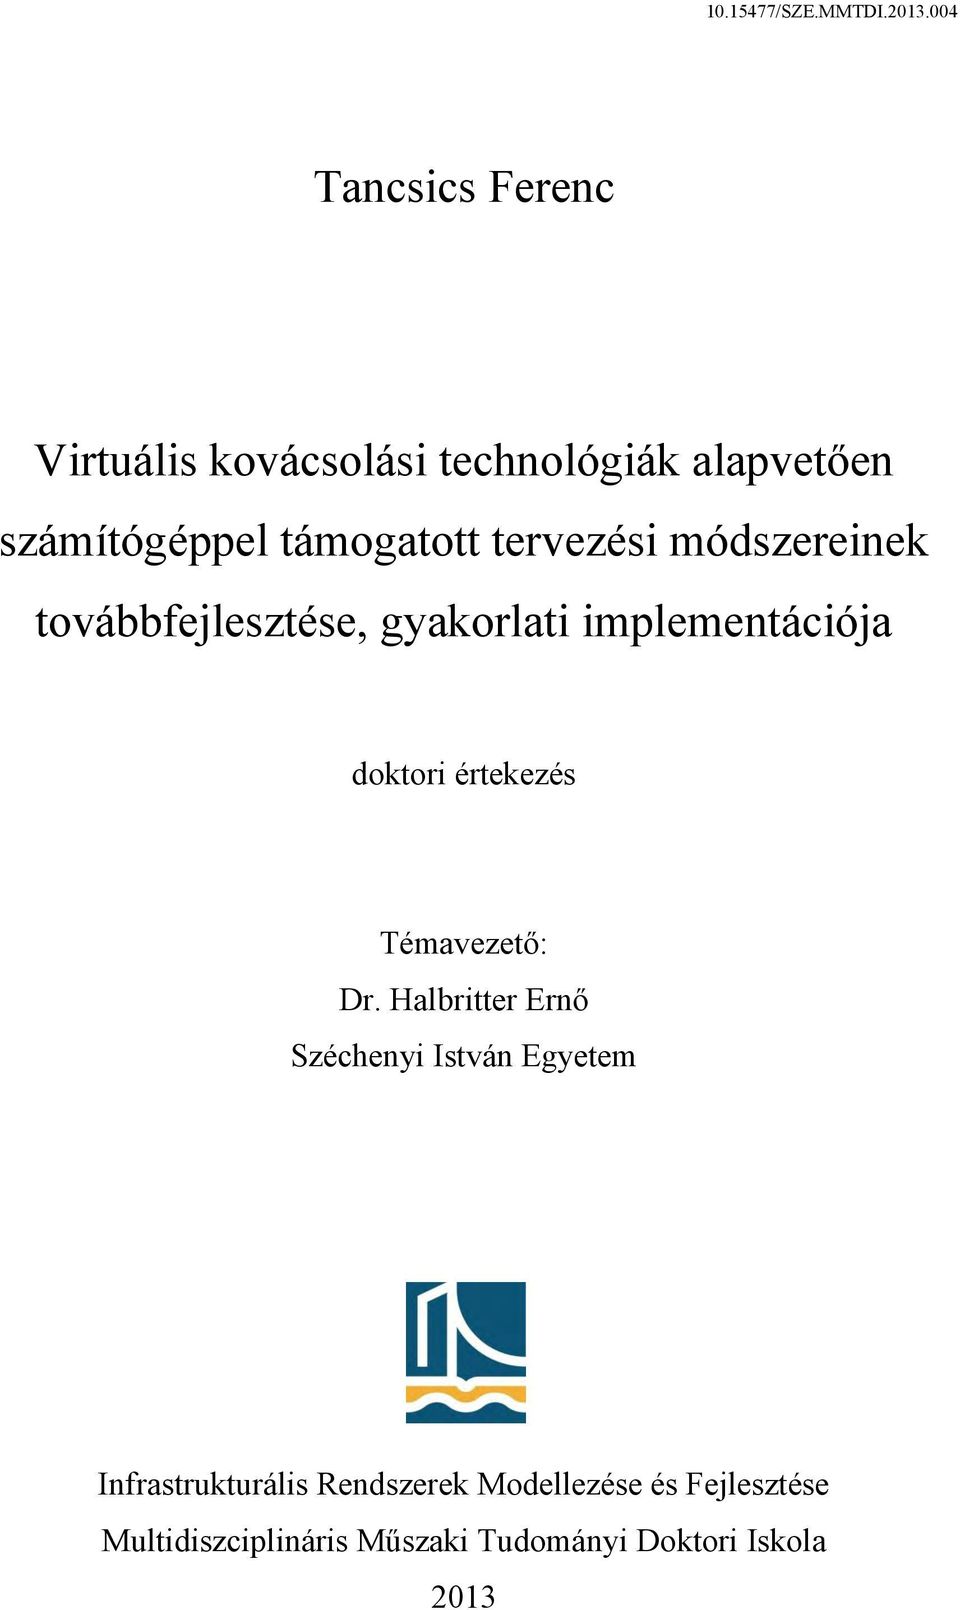 SZE.MMTDI Tancsics Ferenc - PDF Ingyenes letöltés